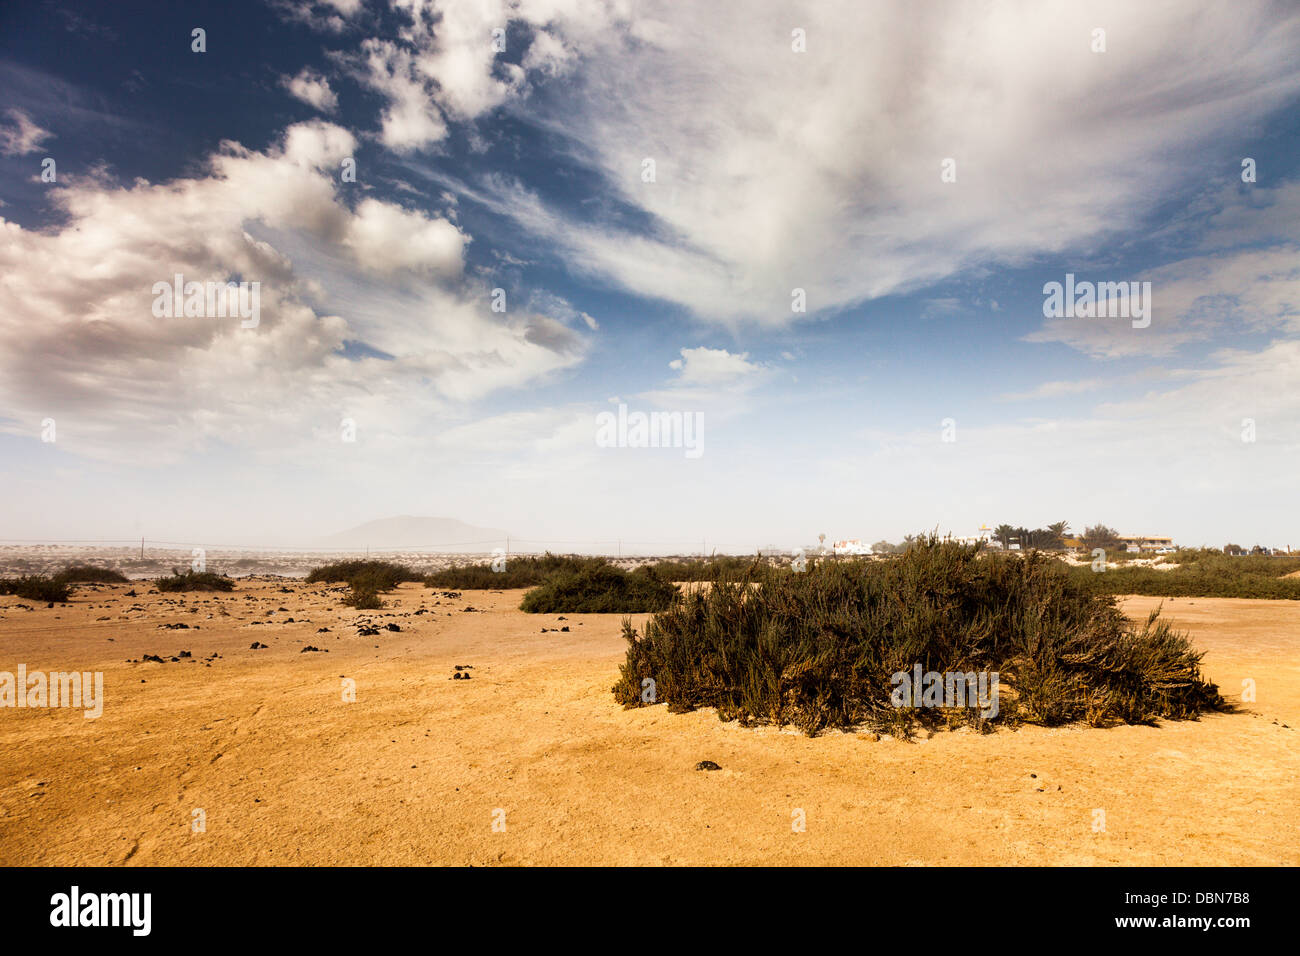 desert with vegetation Stock Photo